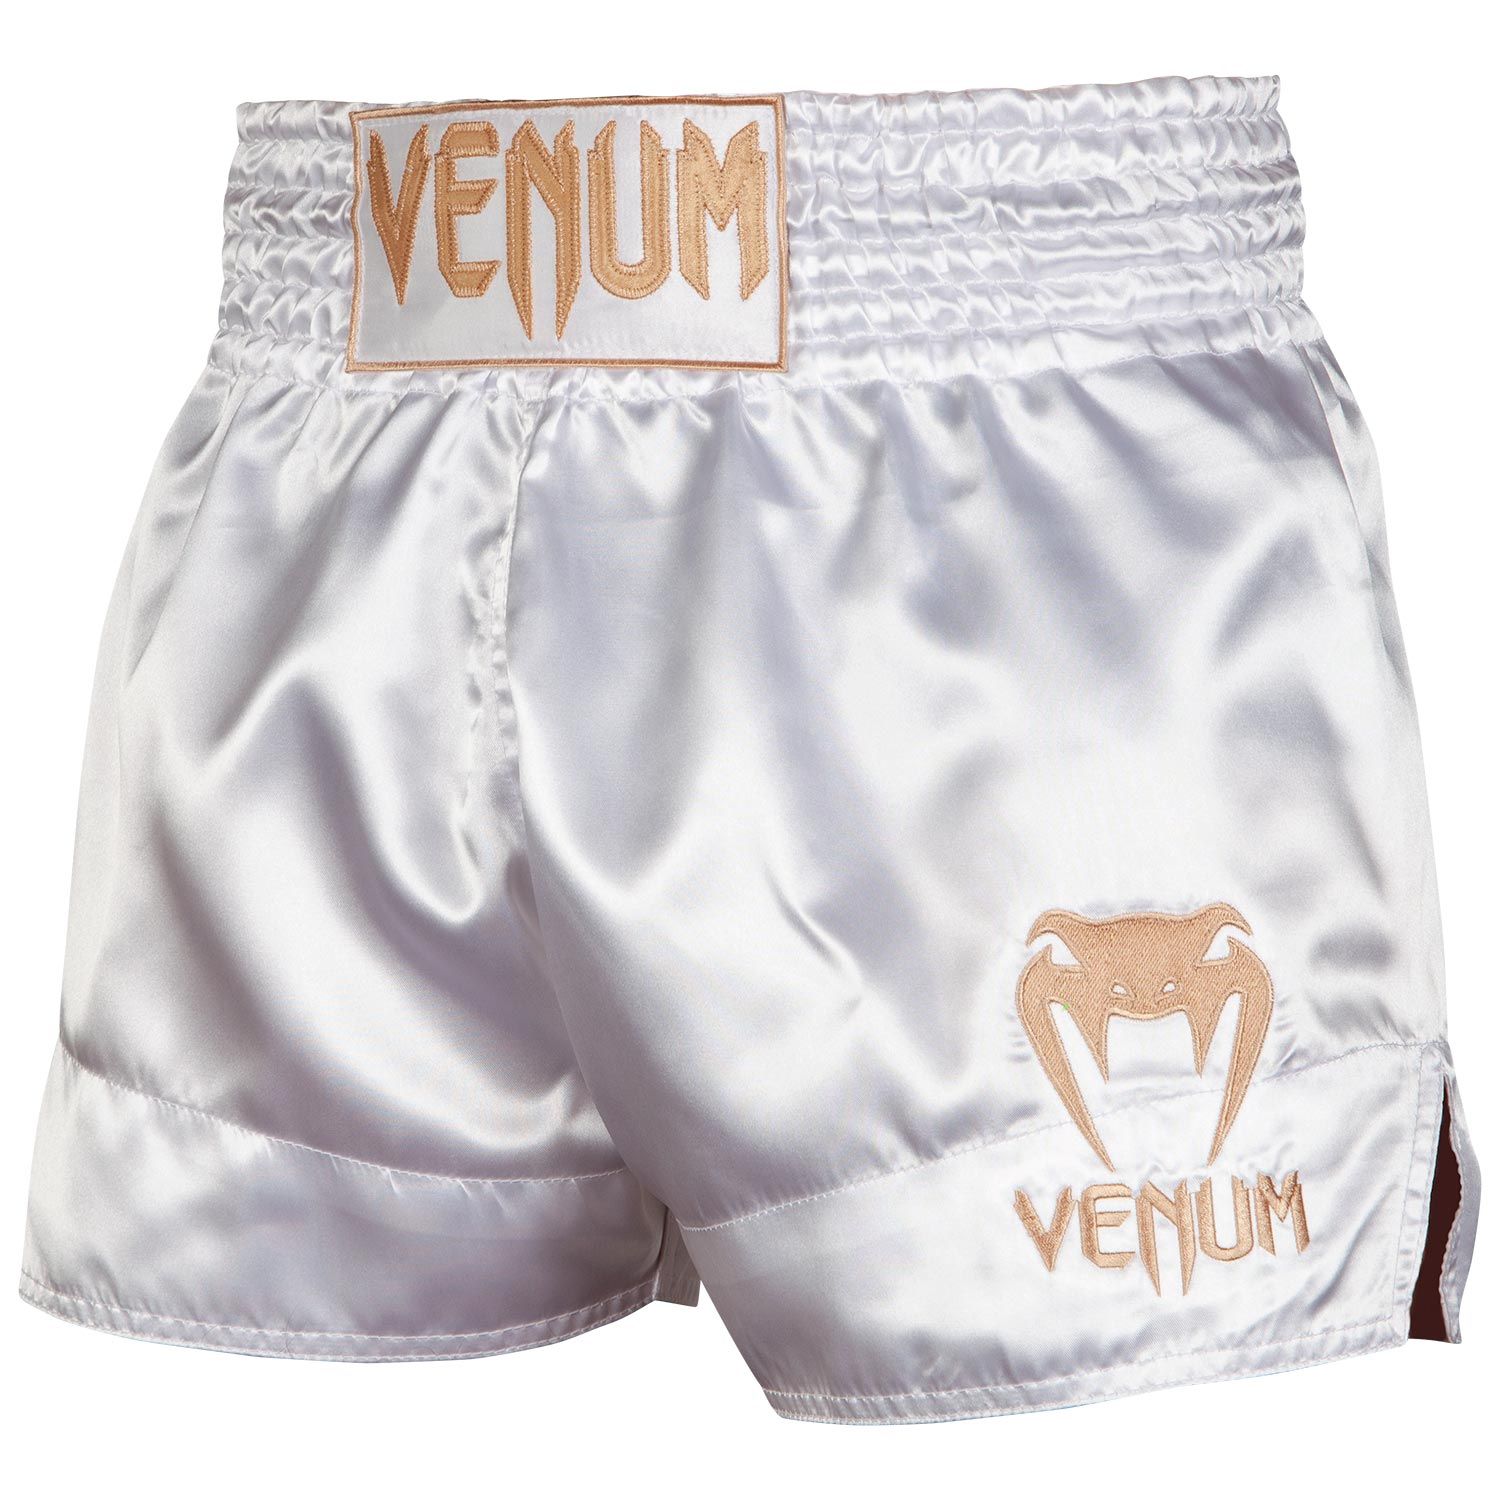 VENUM CLASSIC Thai nadrág, fehér